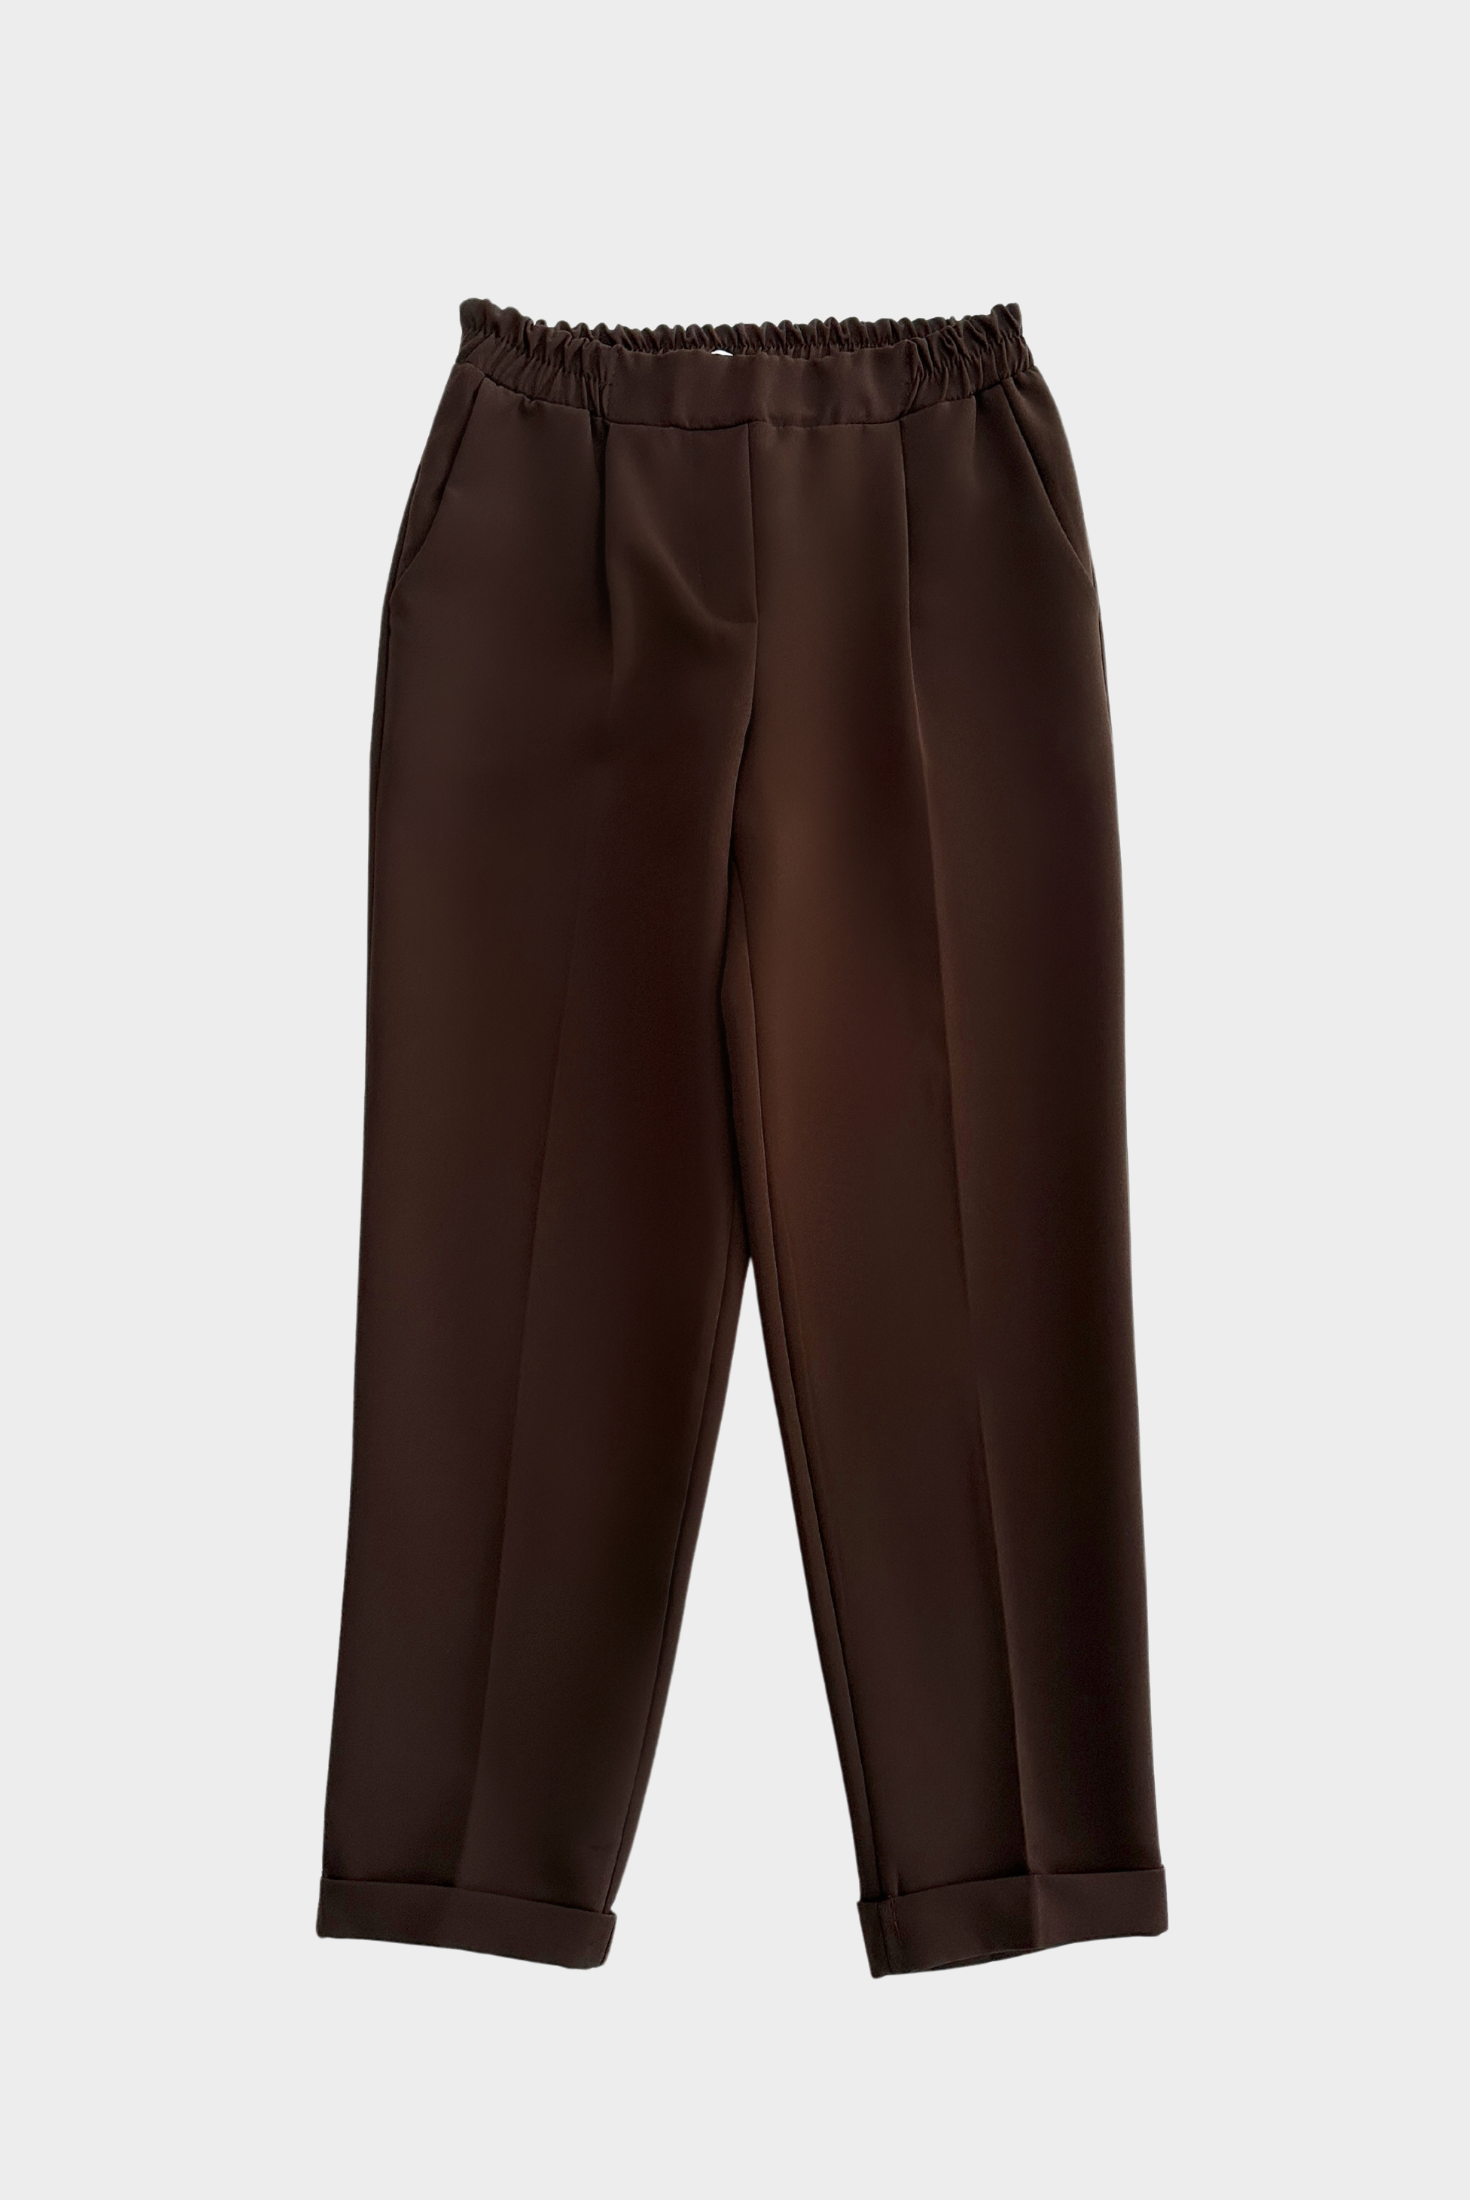 מכנס מחויט עם גומי במותן בצבע חום כהה